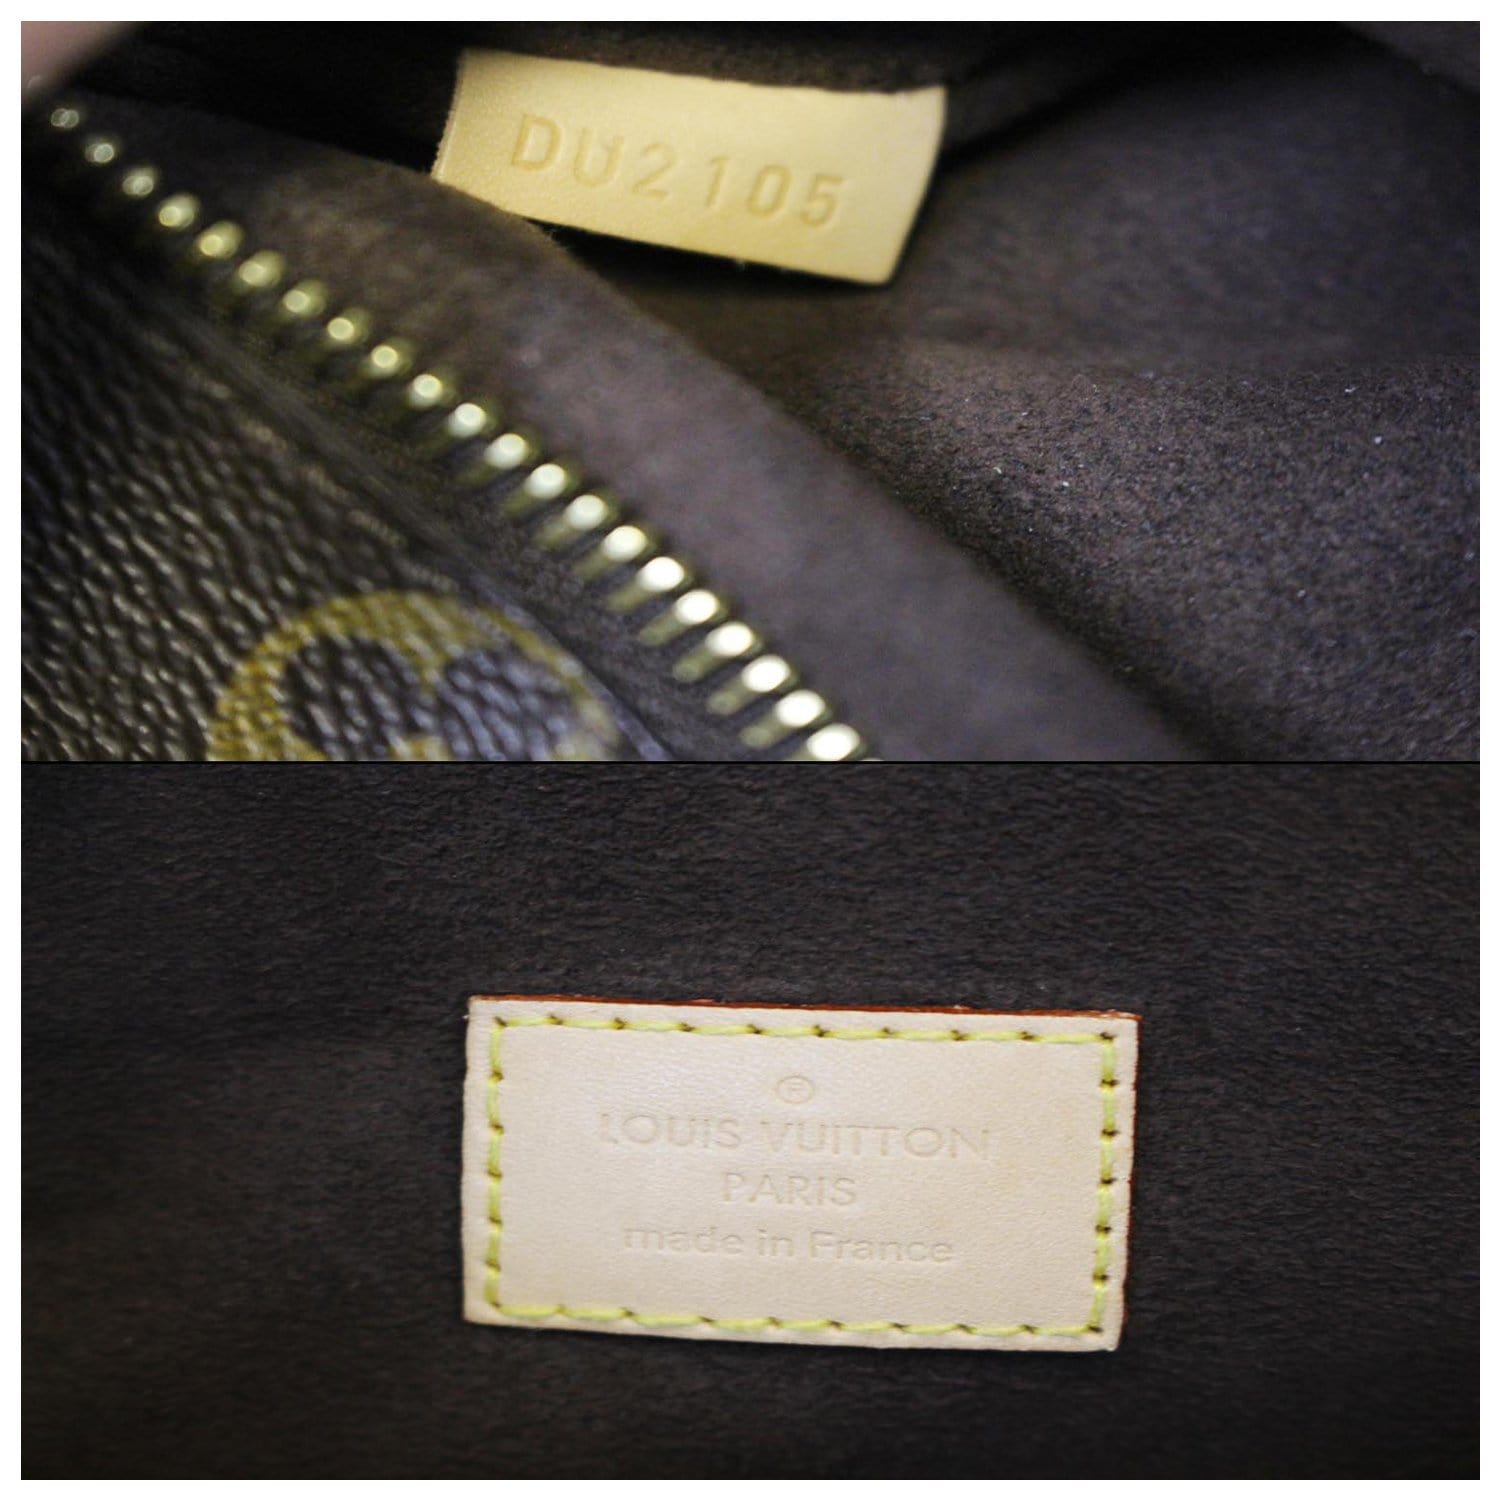 M44875 POCHETTE MÉTIS Louis Vuitton Crossbody Bag - Monogram